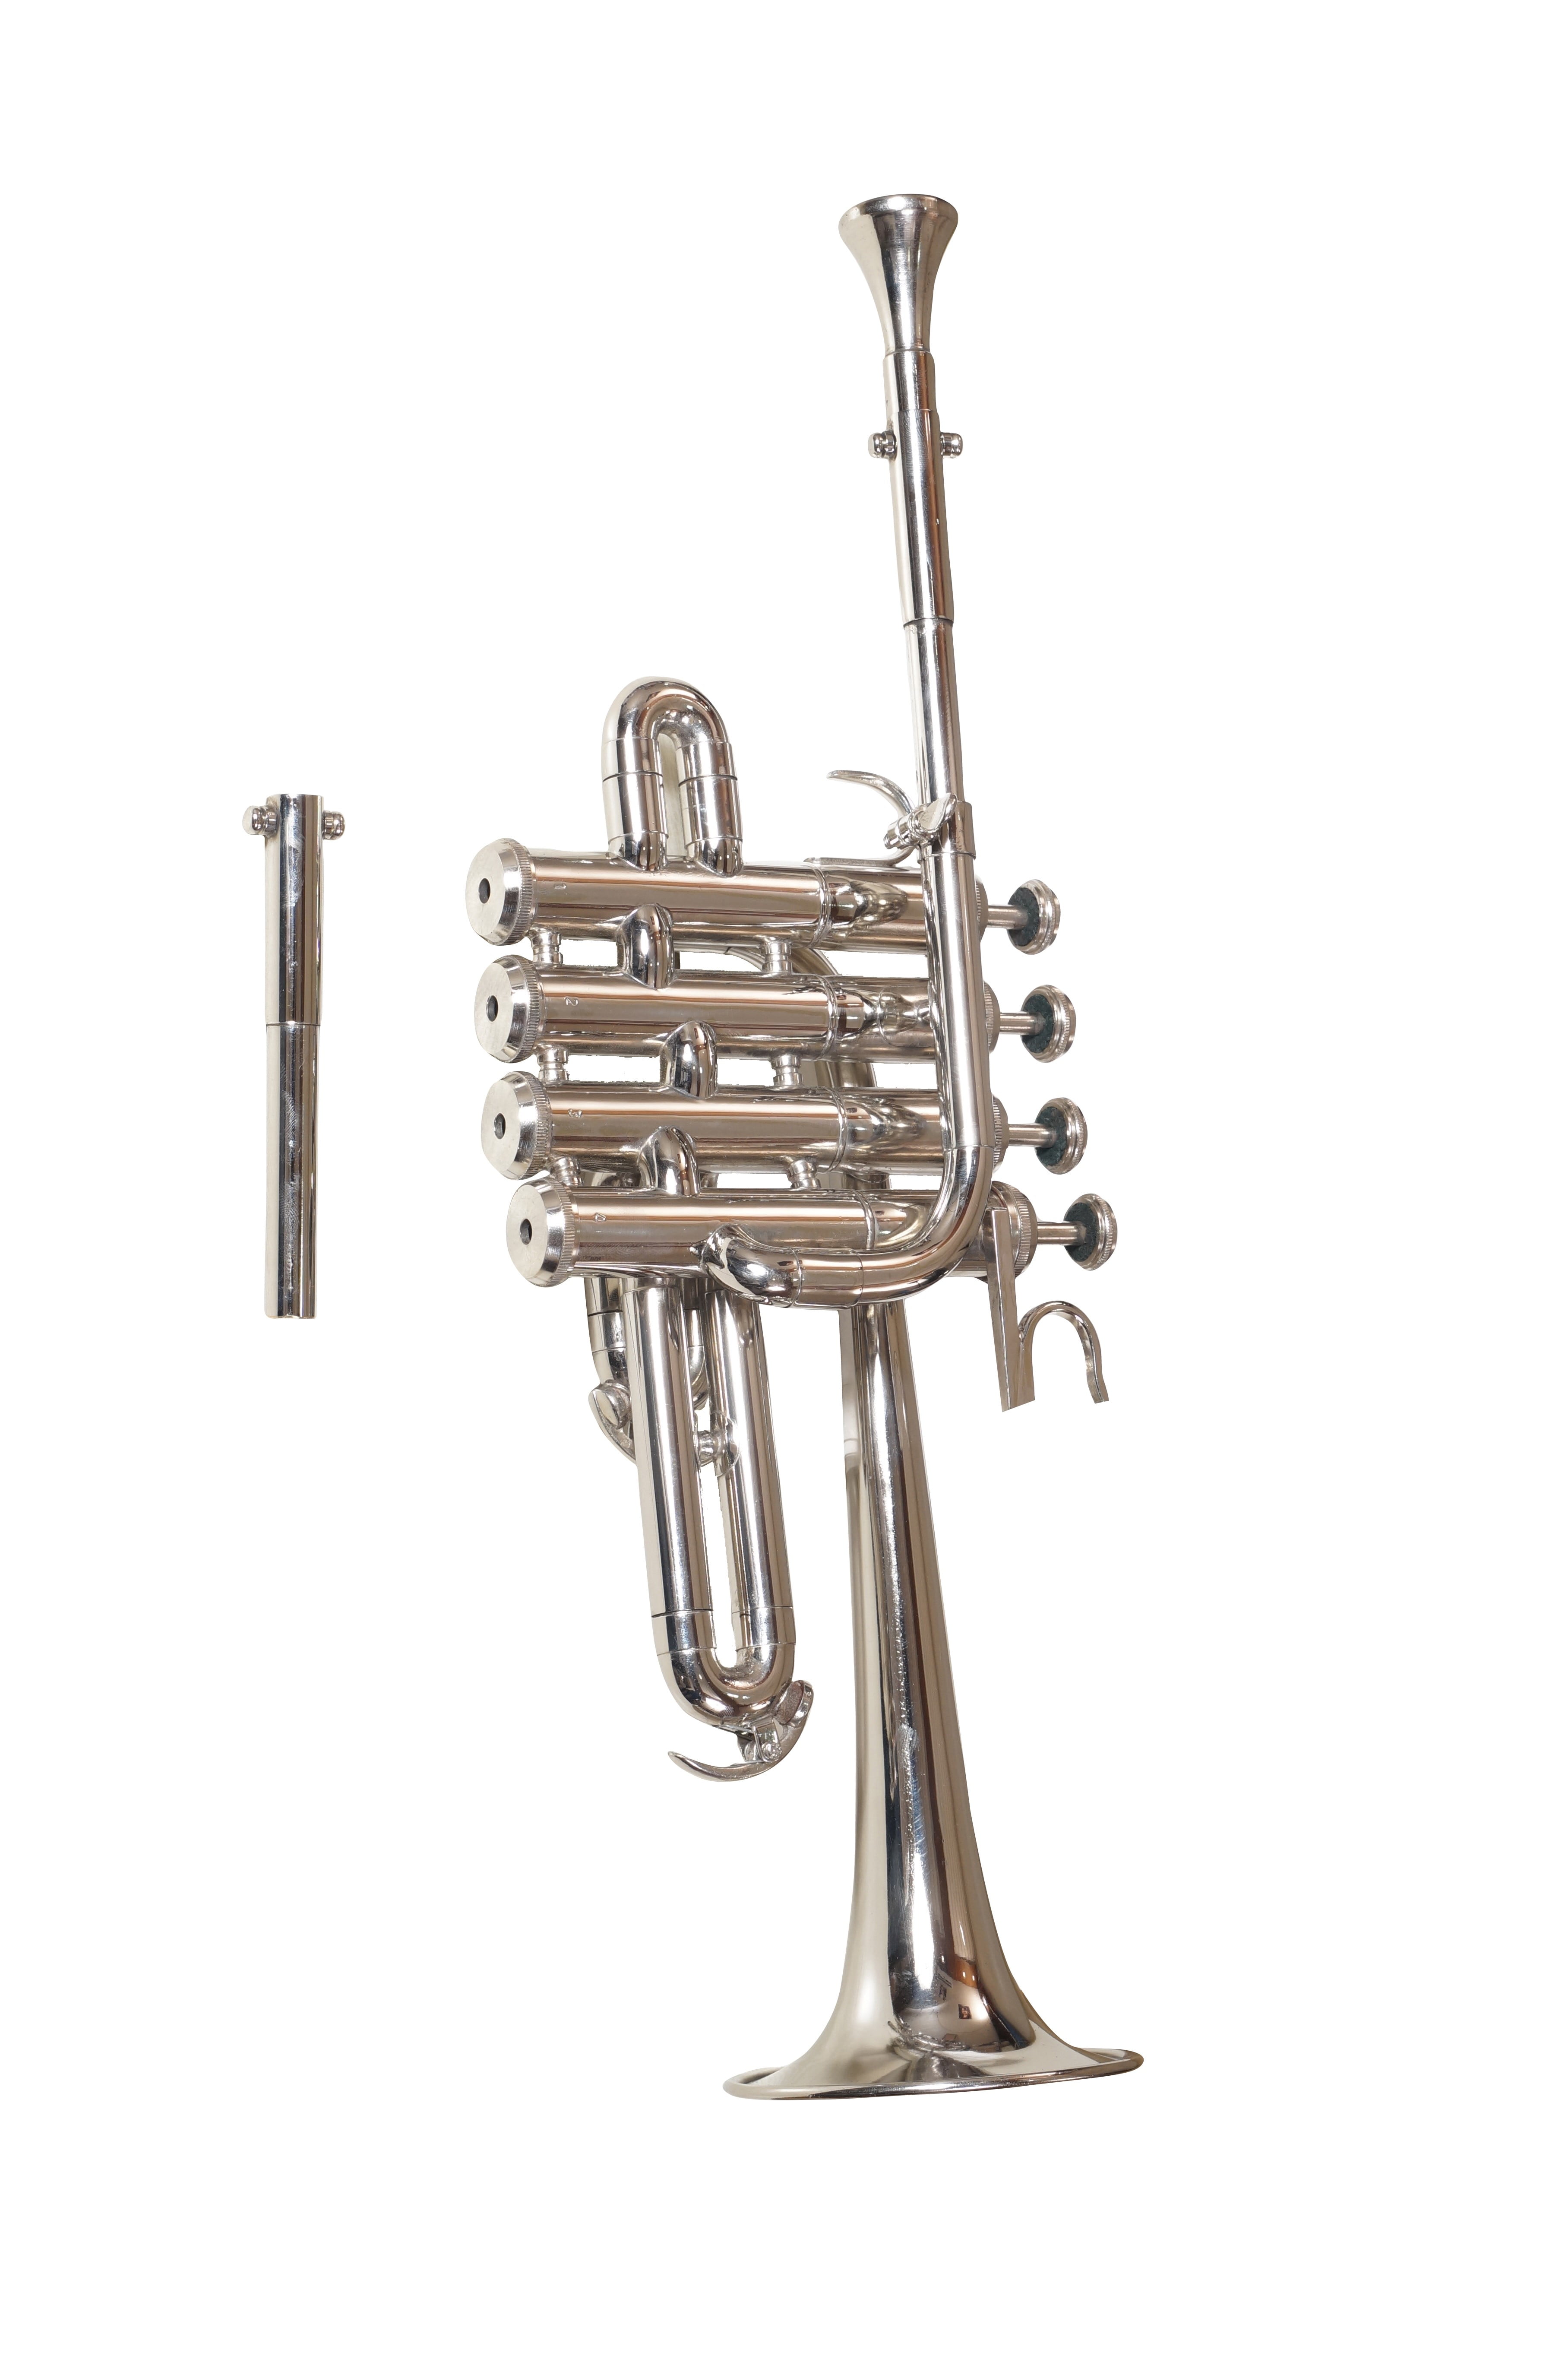 SHREYAS Piccolo Trumpet Brass Finish Picollo Bb/A Pitch W/Case-Mp Gold 